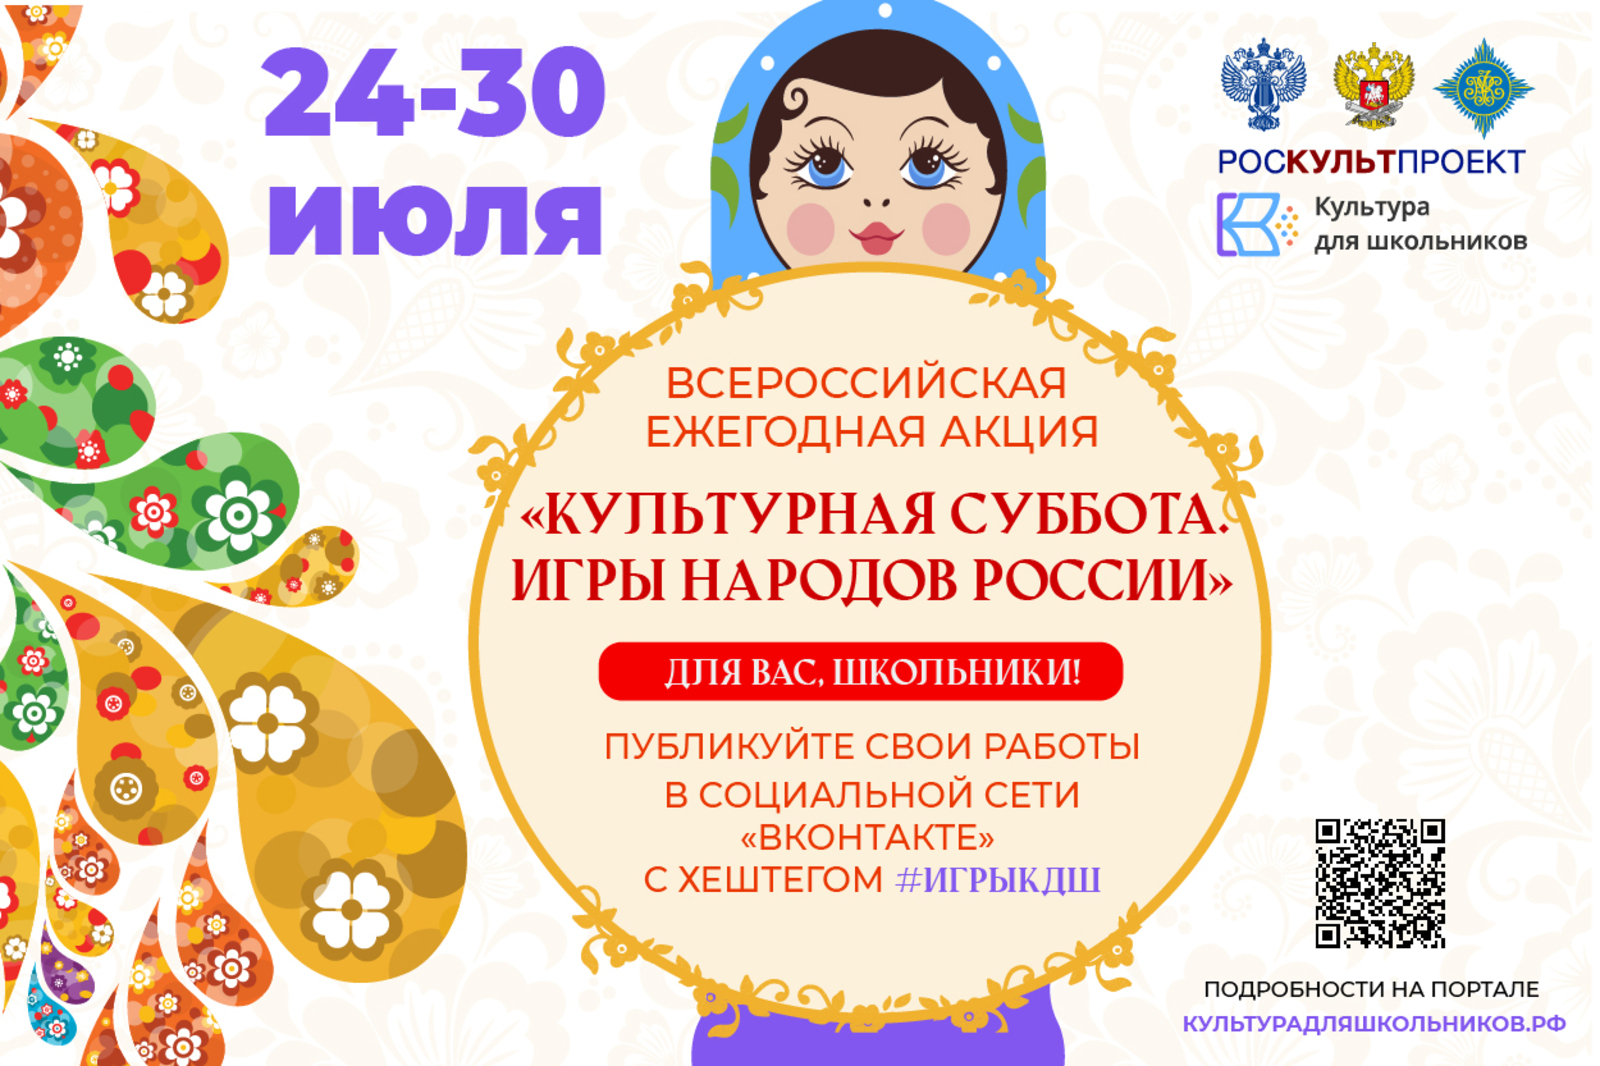 24 июля в рамках проекта «Культура для школьников» стартует ежегодная акция «Культурная суббота. Игры народов России детям